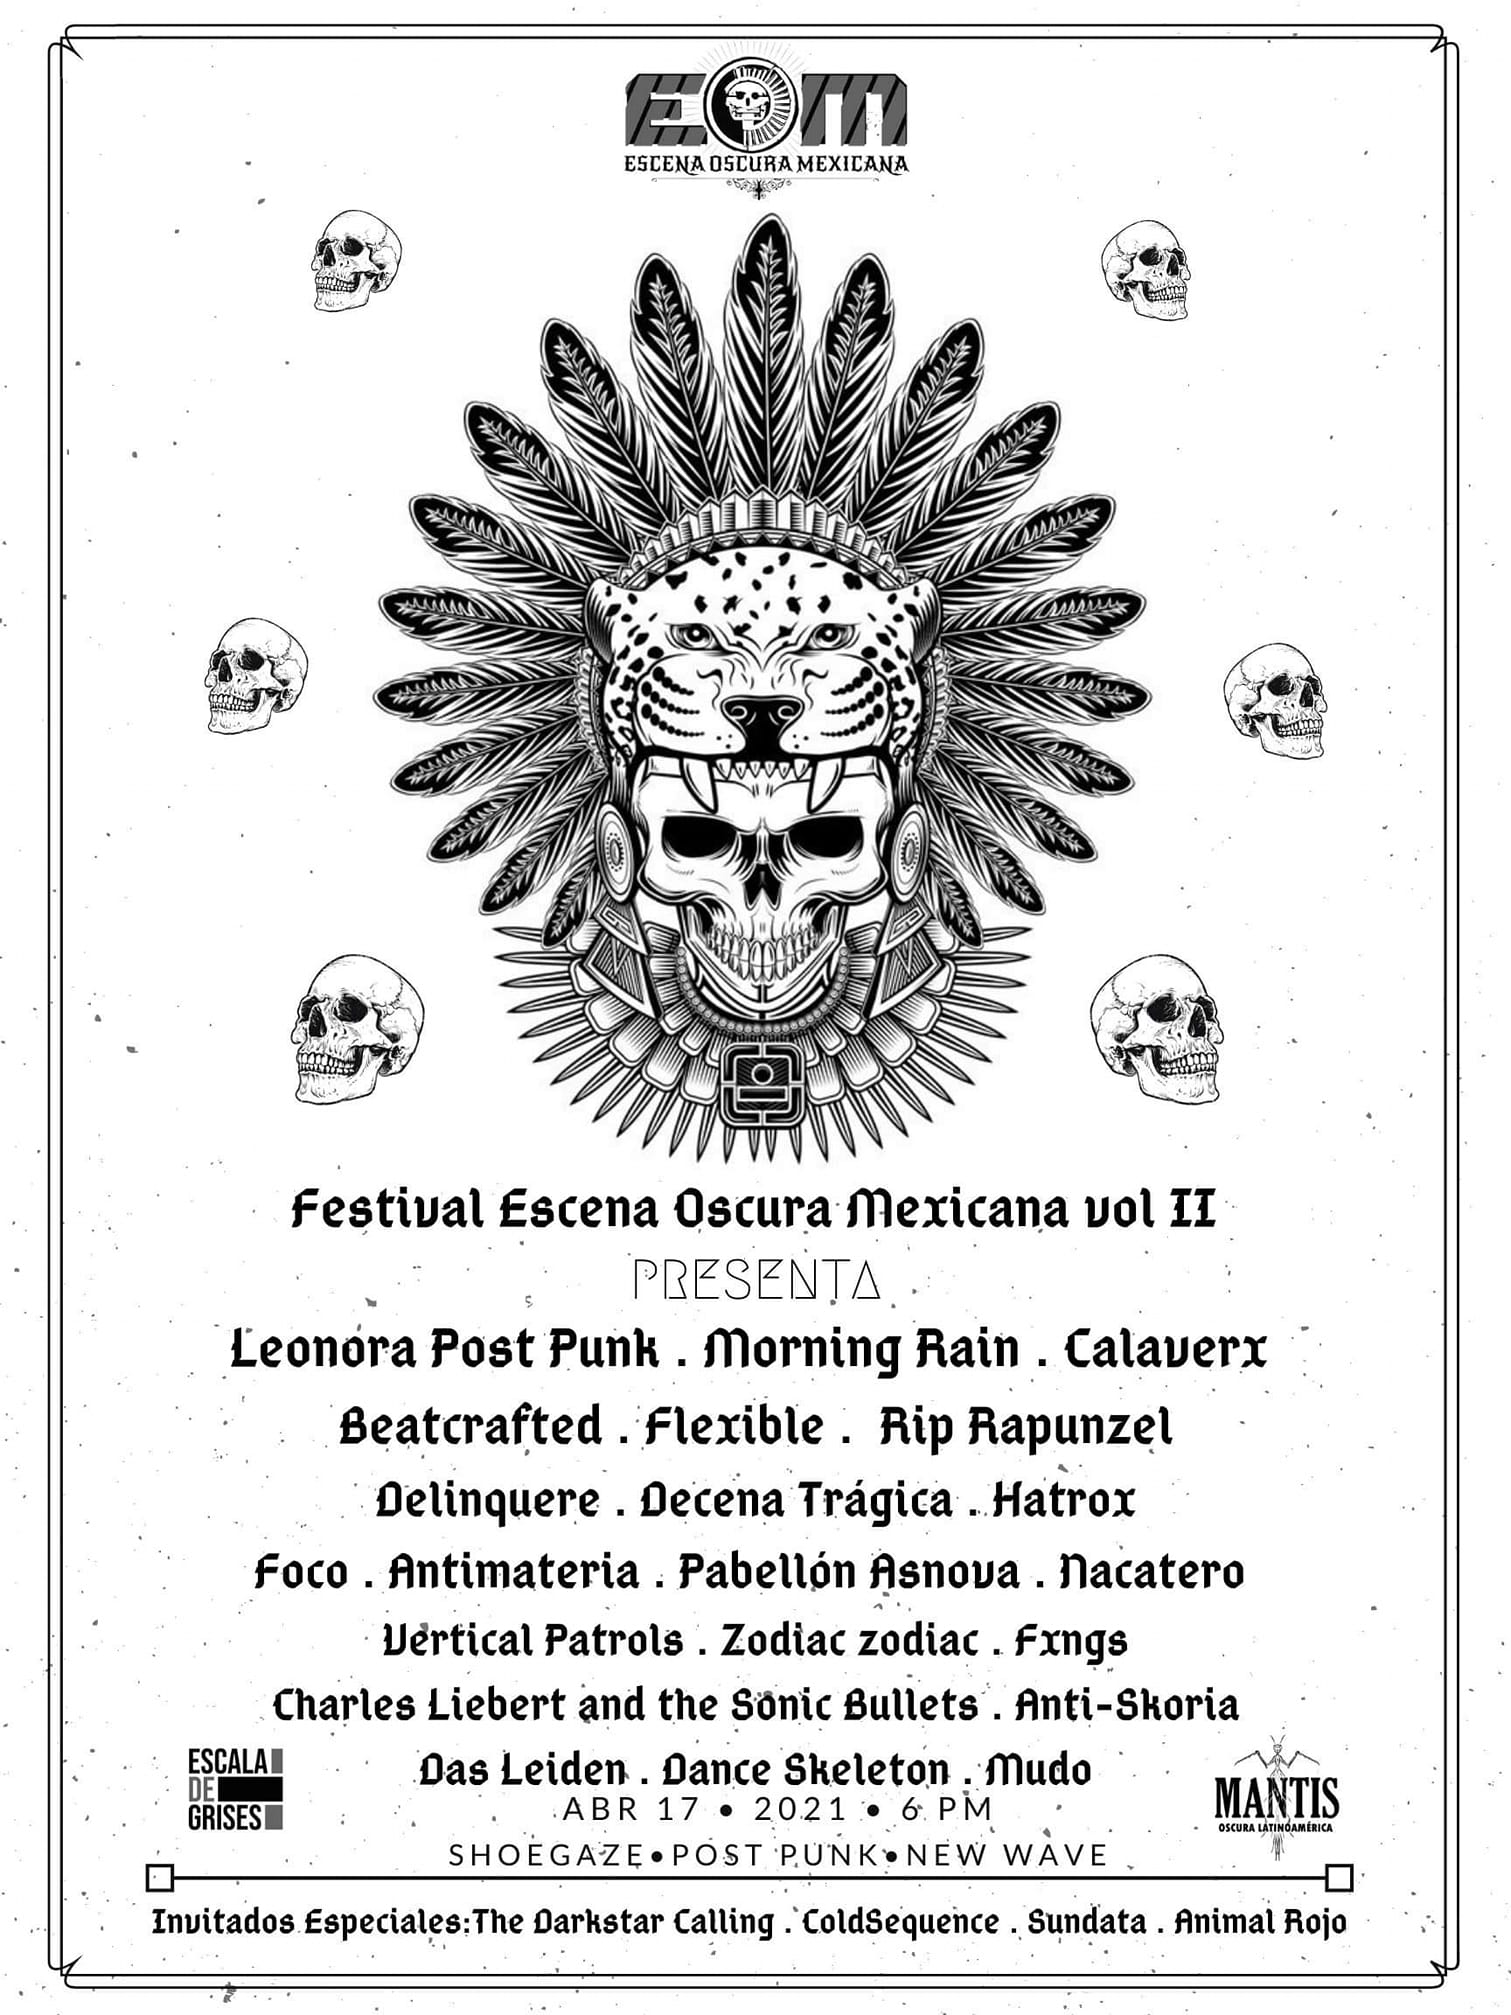 Festival Escena Oscura Mexicana Vol. II